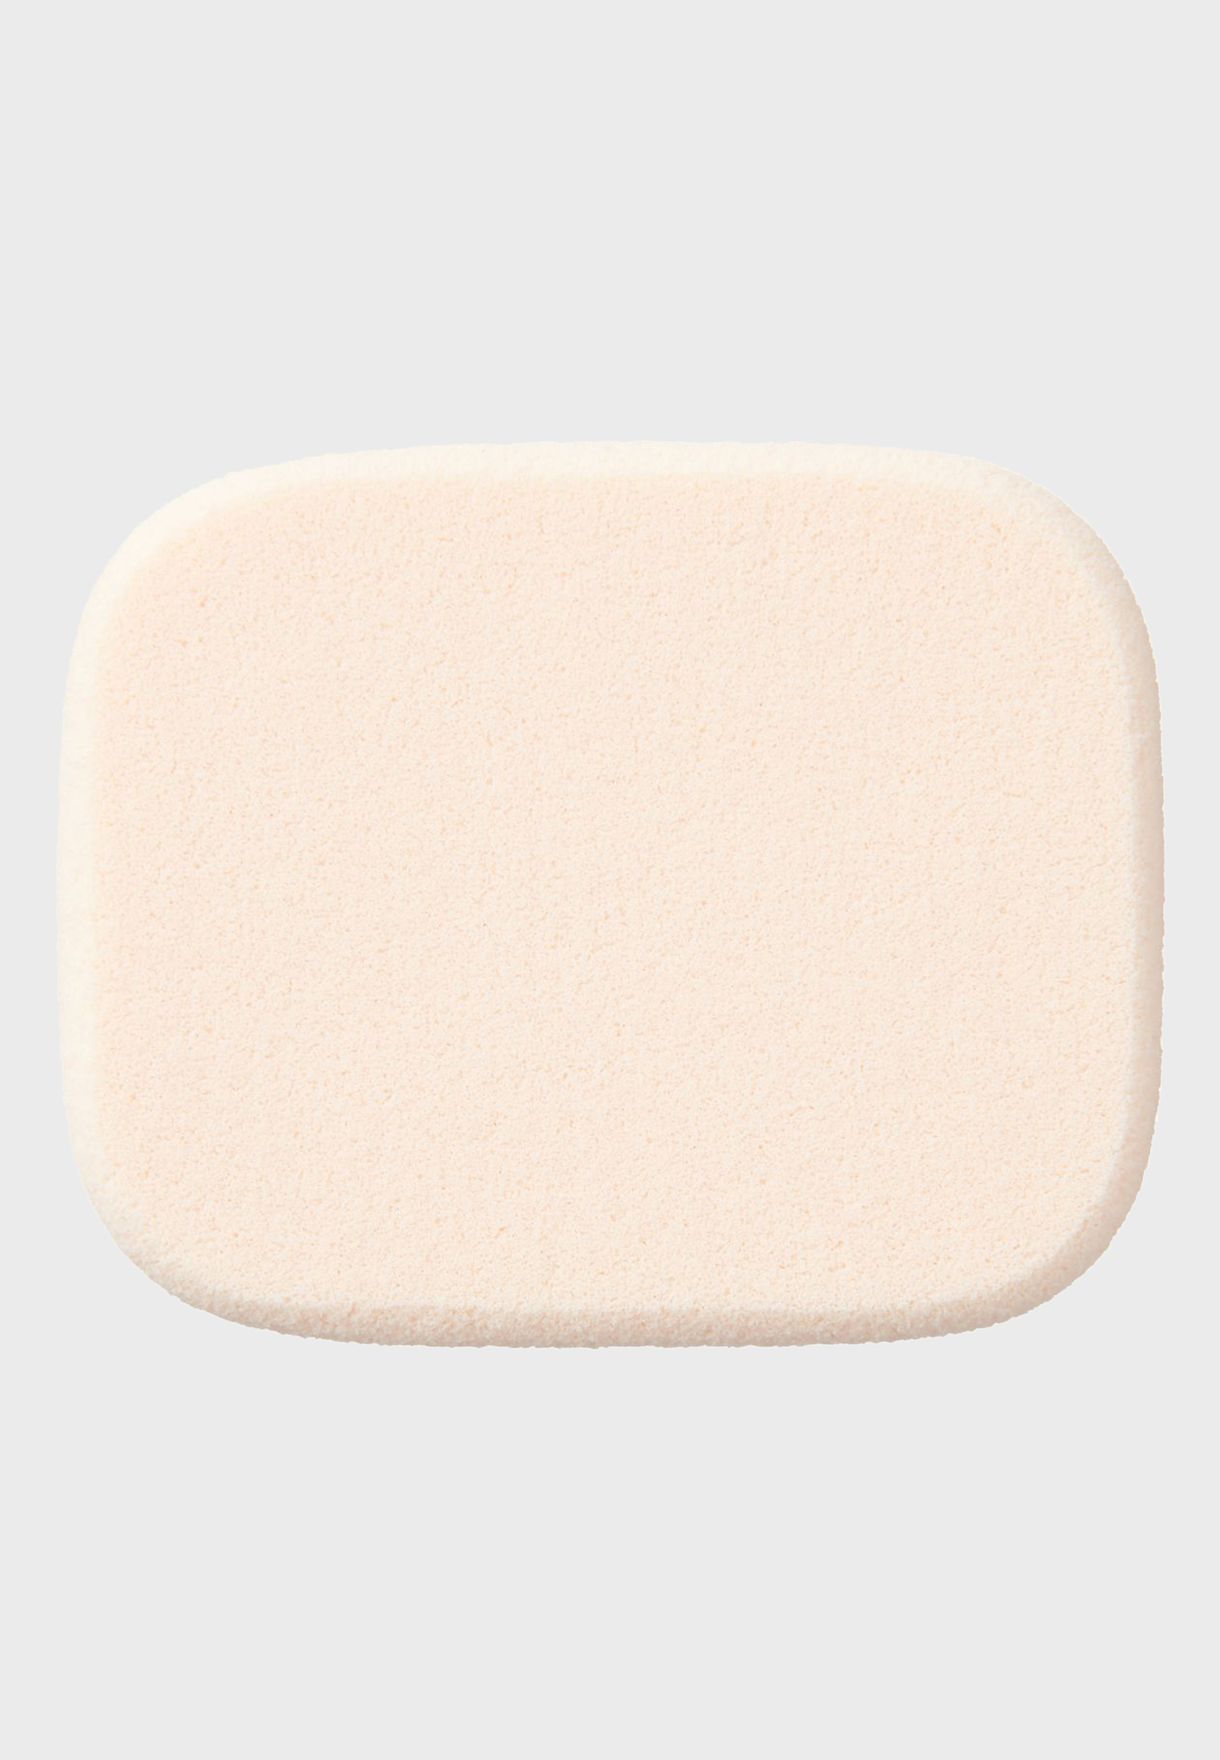 Soft Sponge Puff - 2 pieces